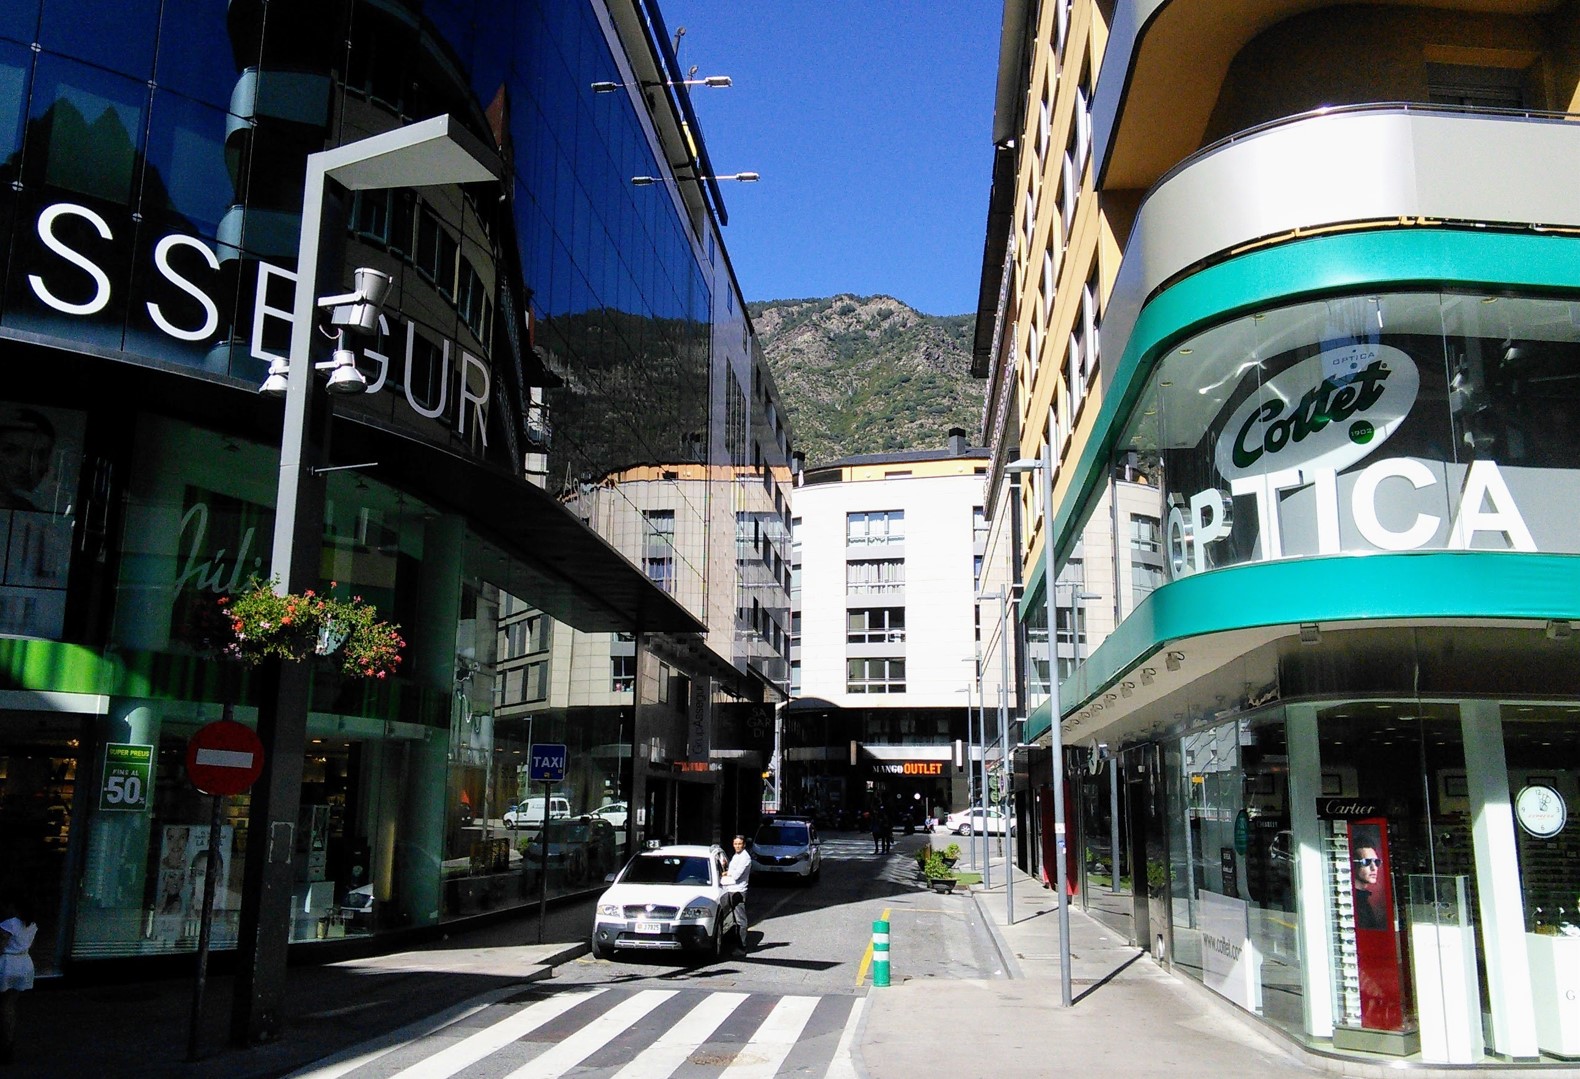 A central street in Andorra La Vella, Andorra